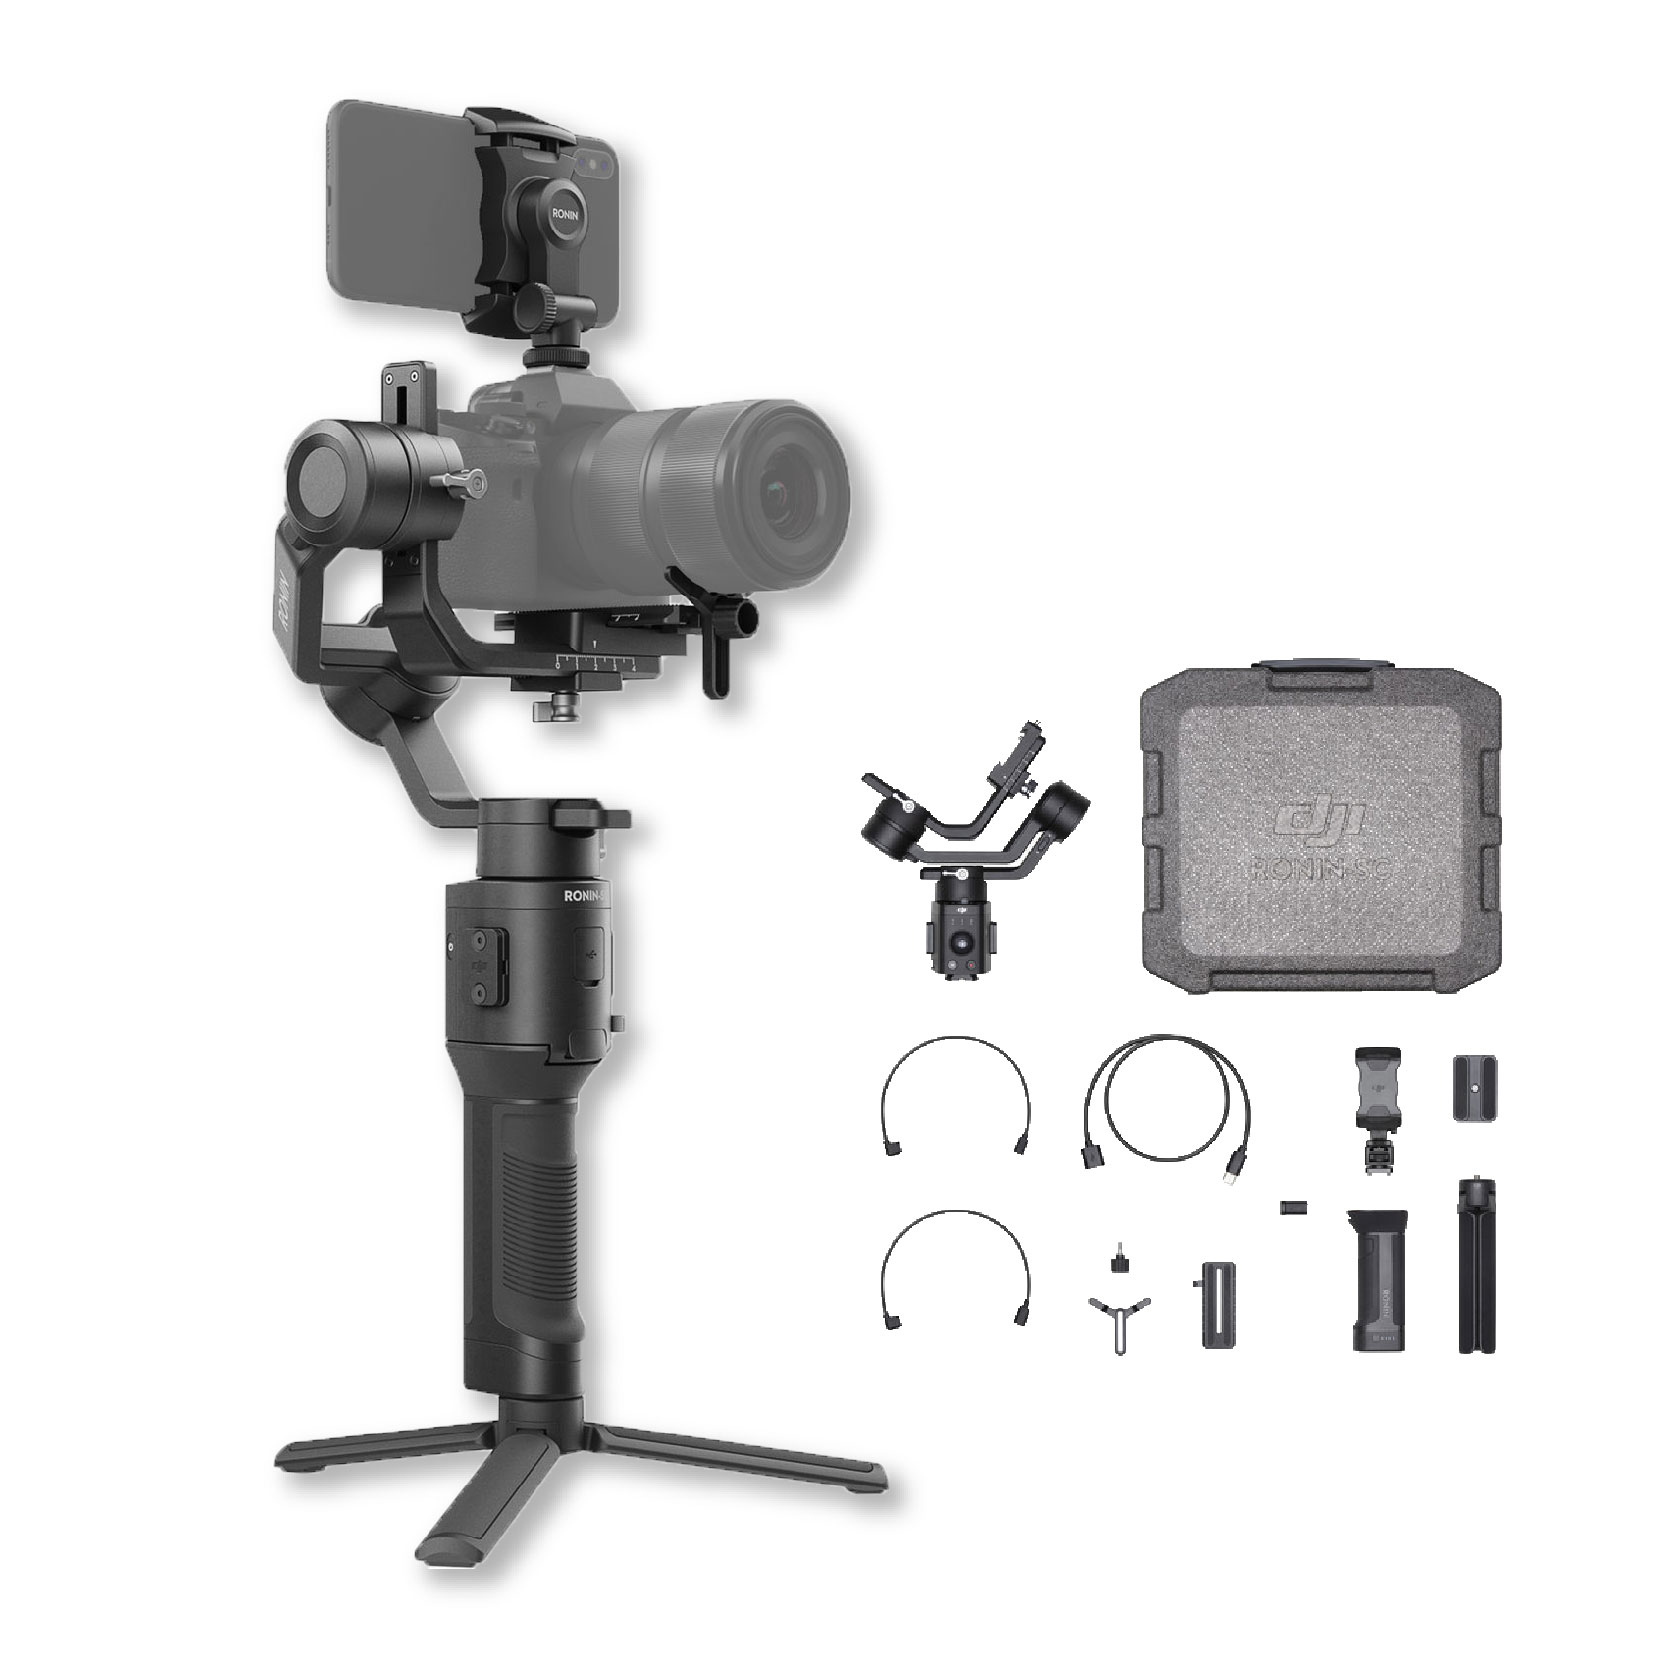 Nuevo gimbal para cámaras de cualquier tamaño de DJI, el Ronin - NAB 2014 